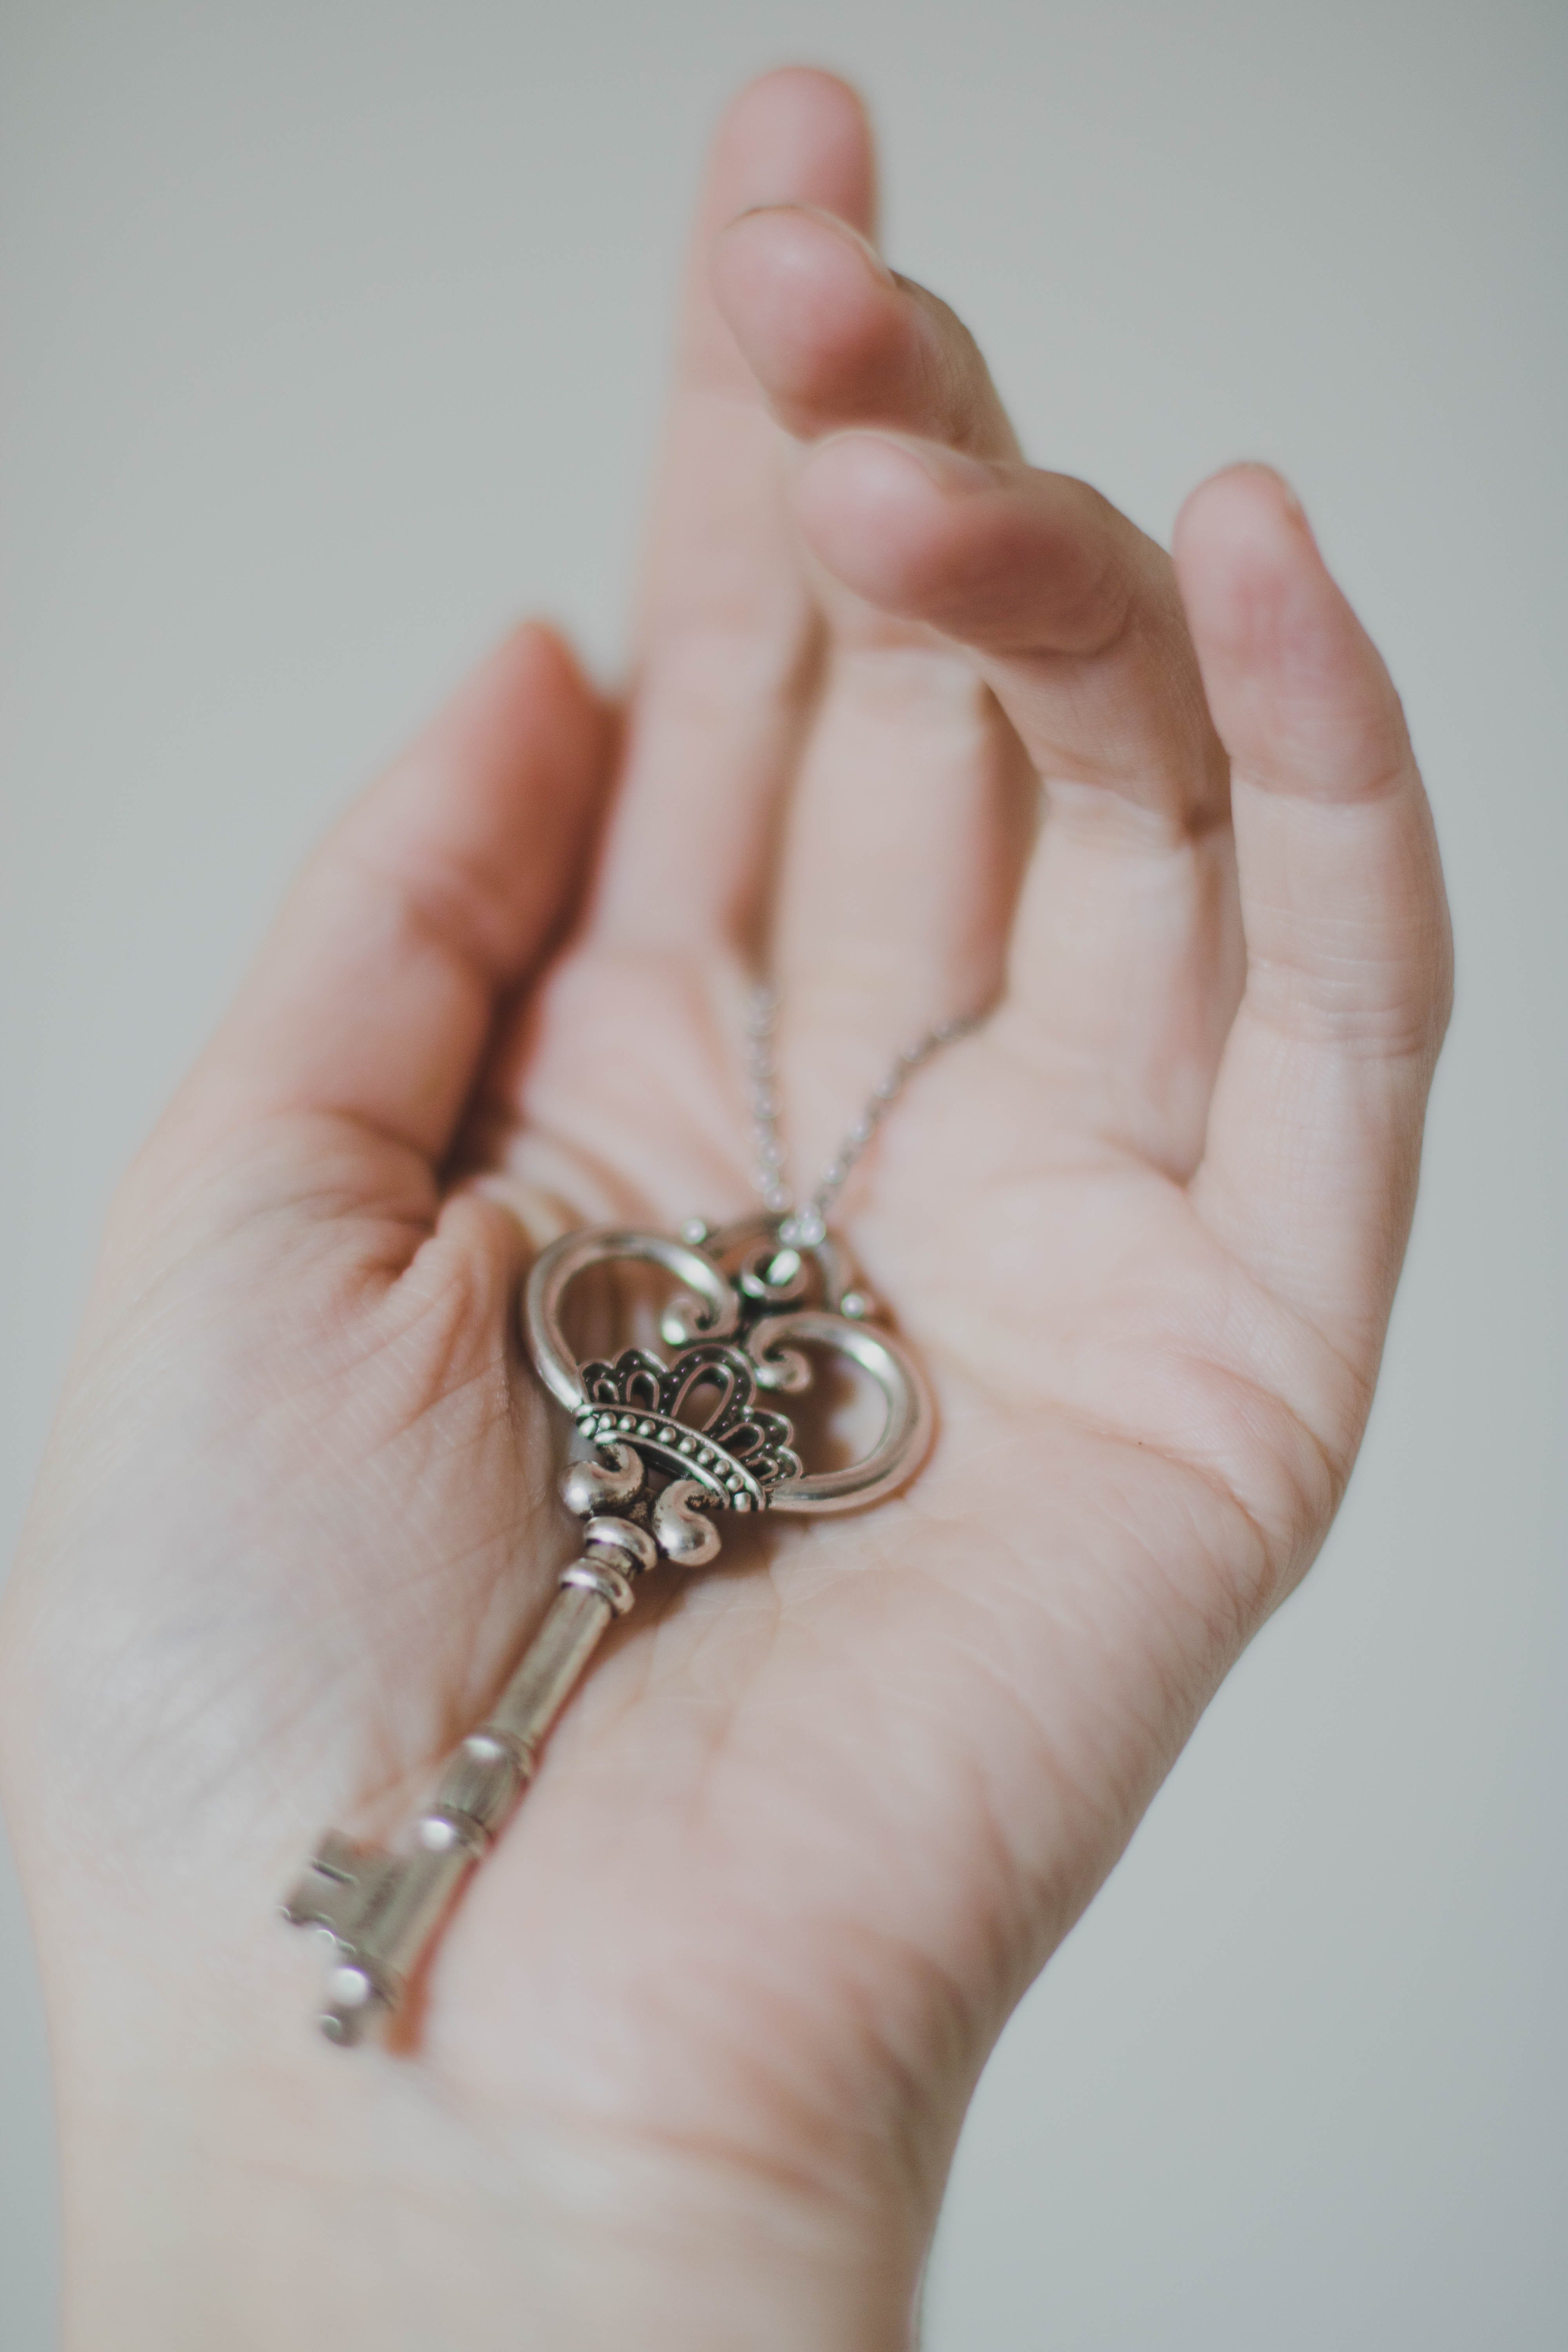 Mia hat einen kleinen Schlüssel gefunden, der an dem Zettel klebte, den ihre Großmutter ihr gegeben hatte. | Quelle: Pexels